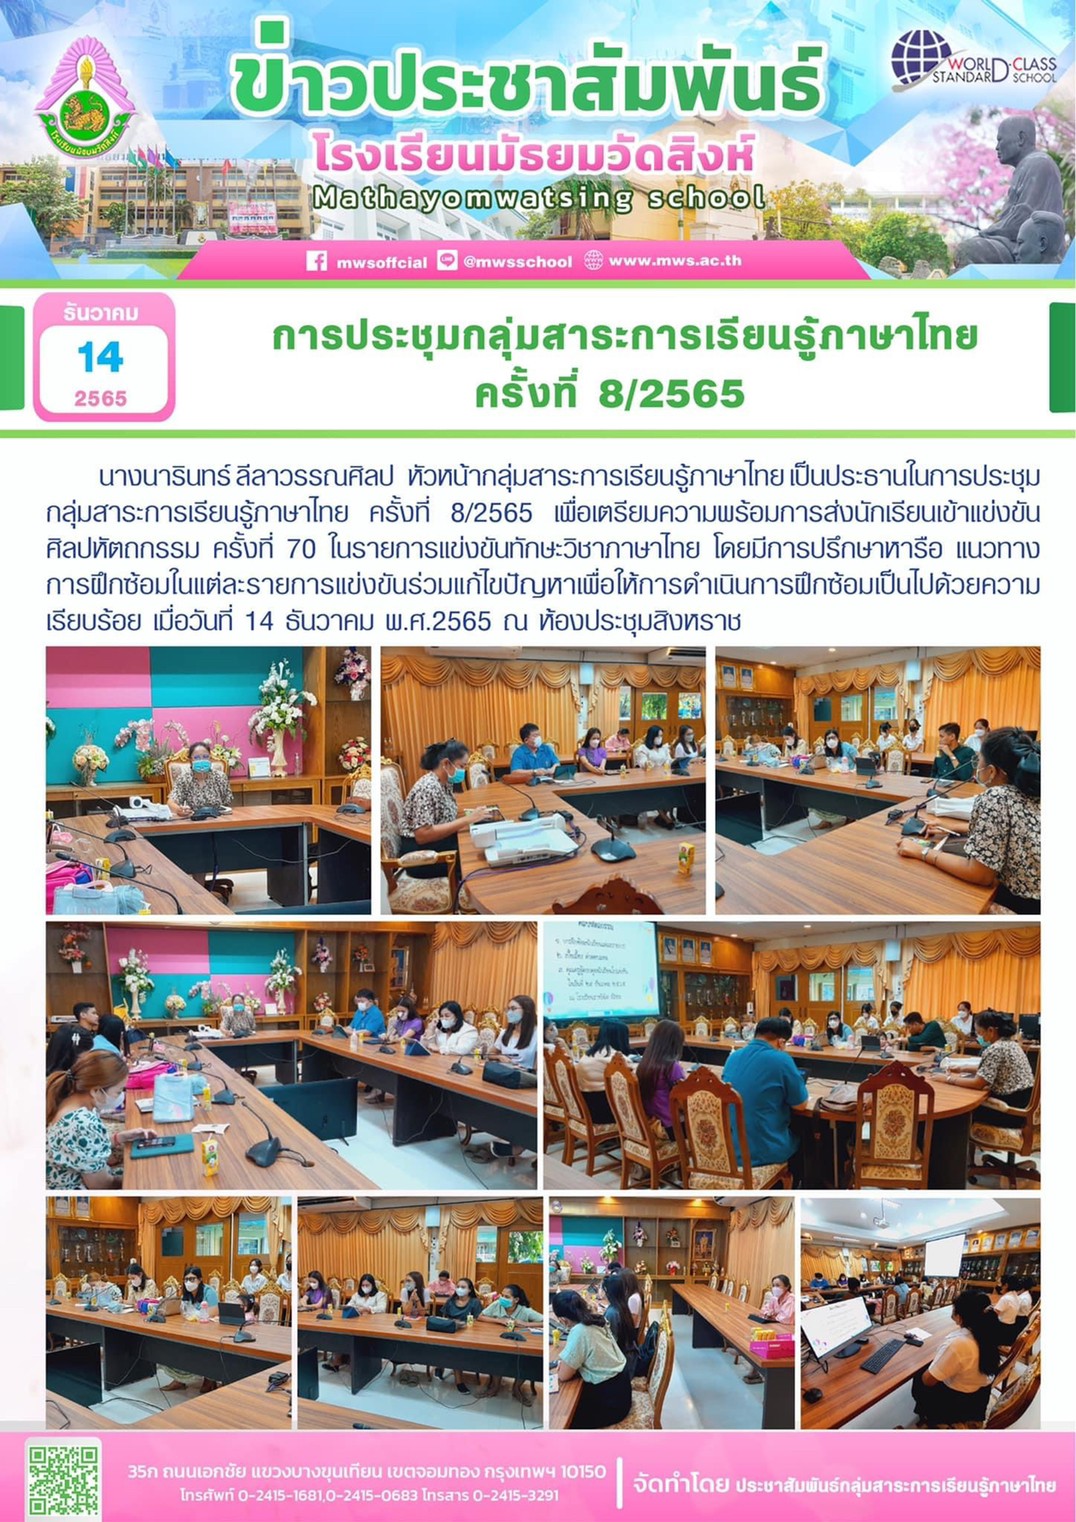 ประชุมกลุ่มสาระการเรียนรู้ภาษาไทย ครั้งที่ 8/2565